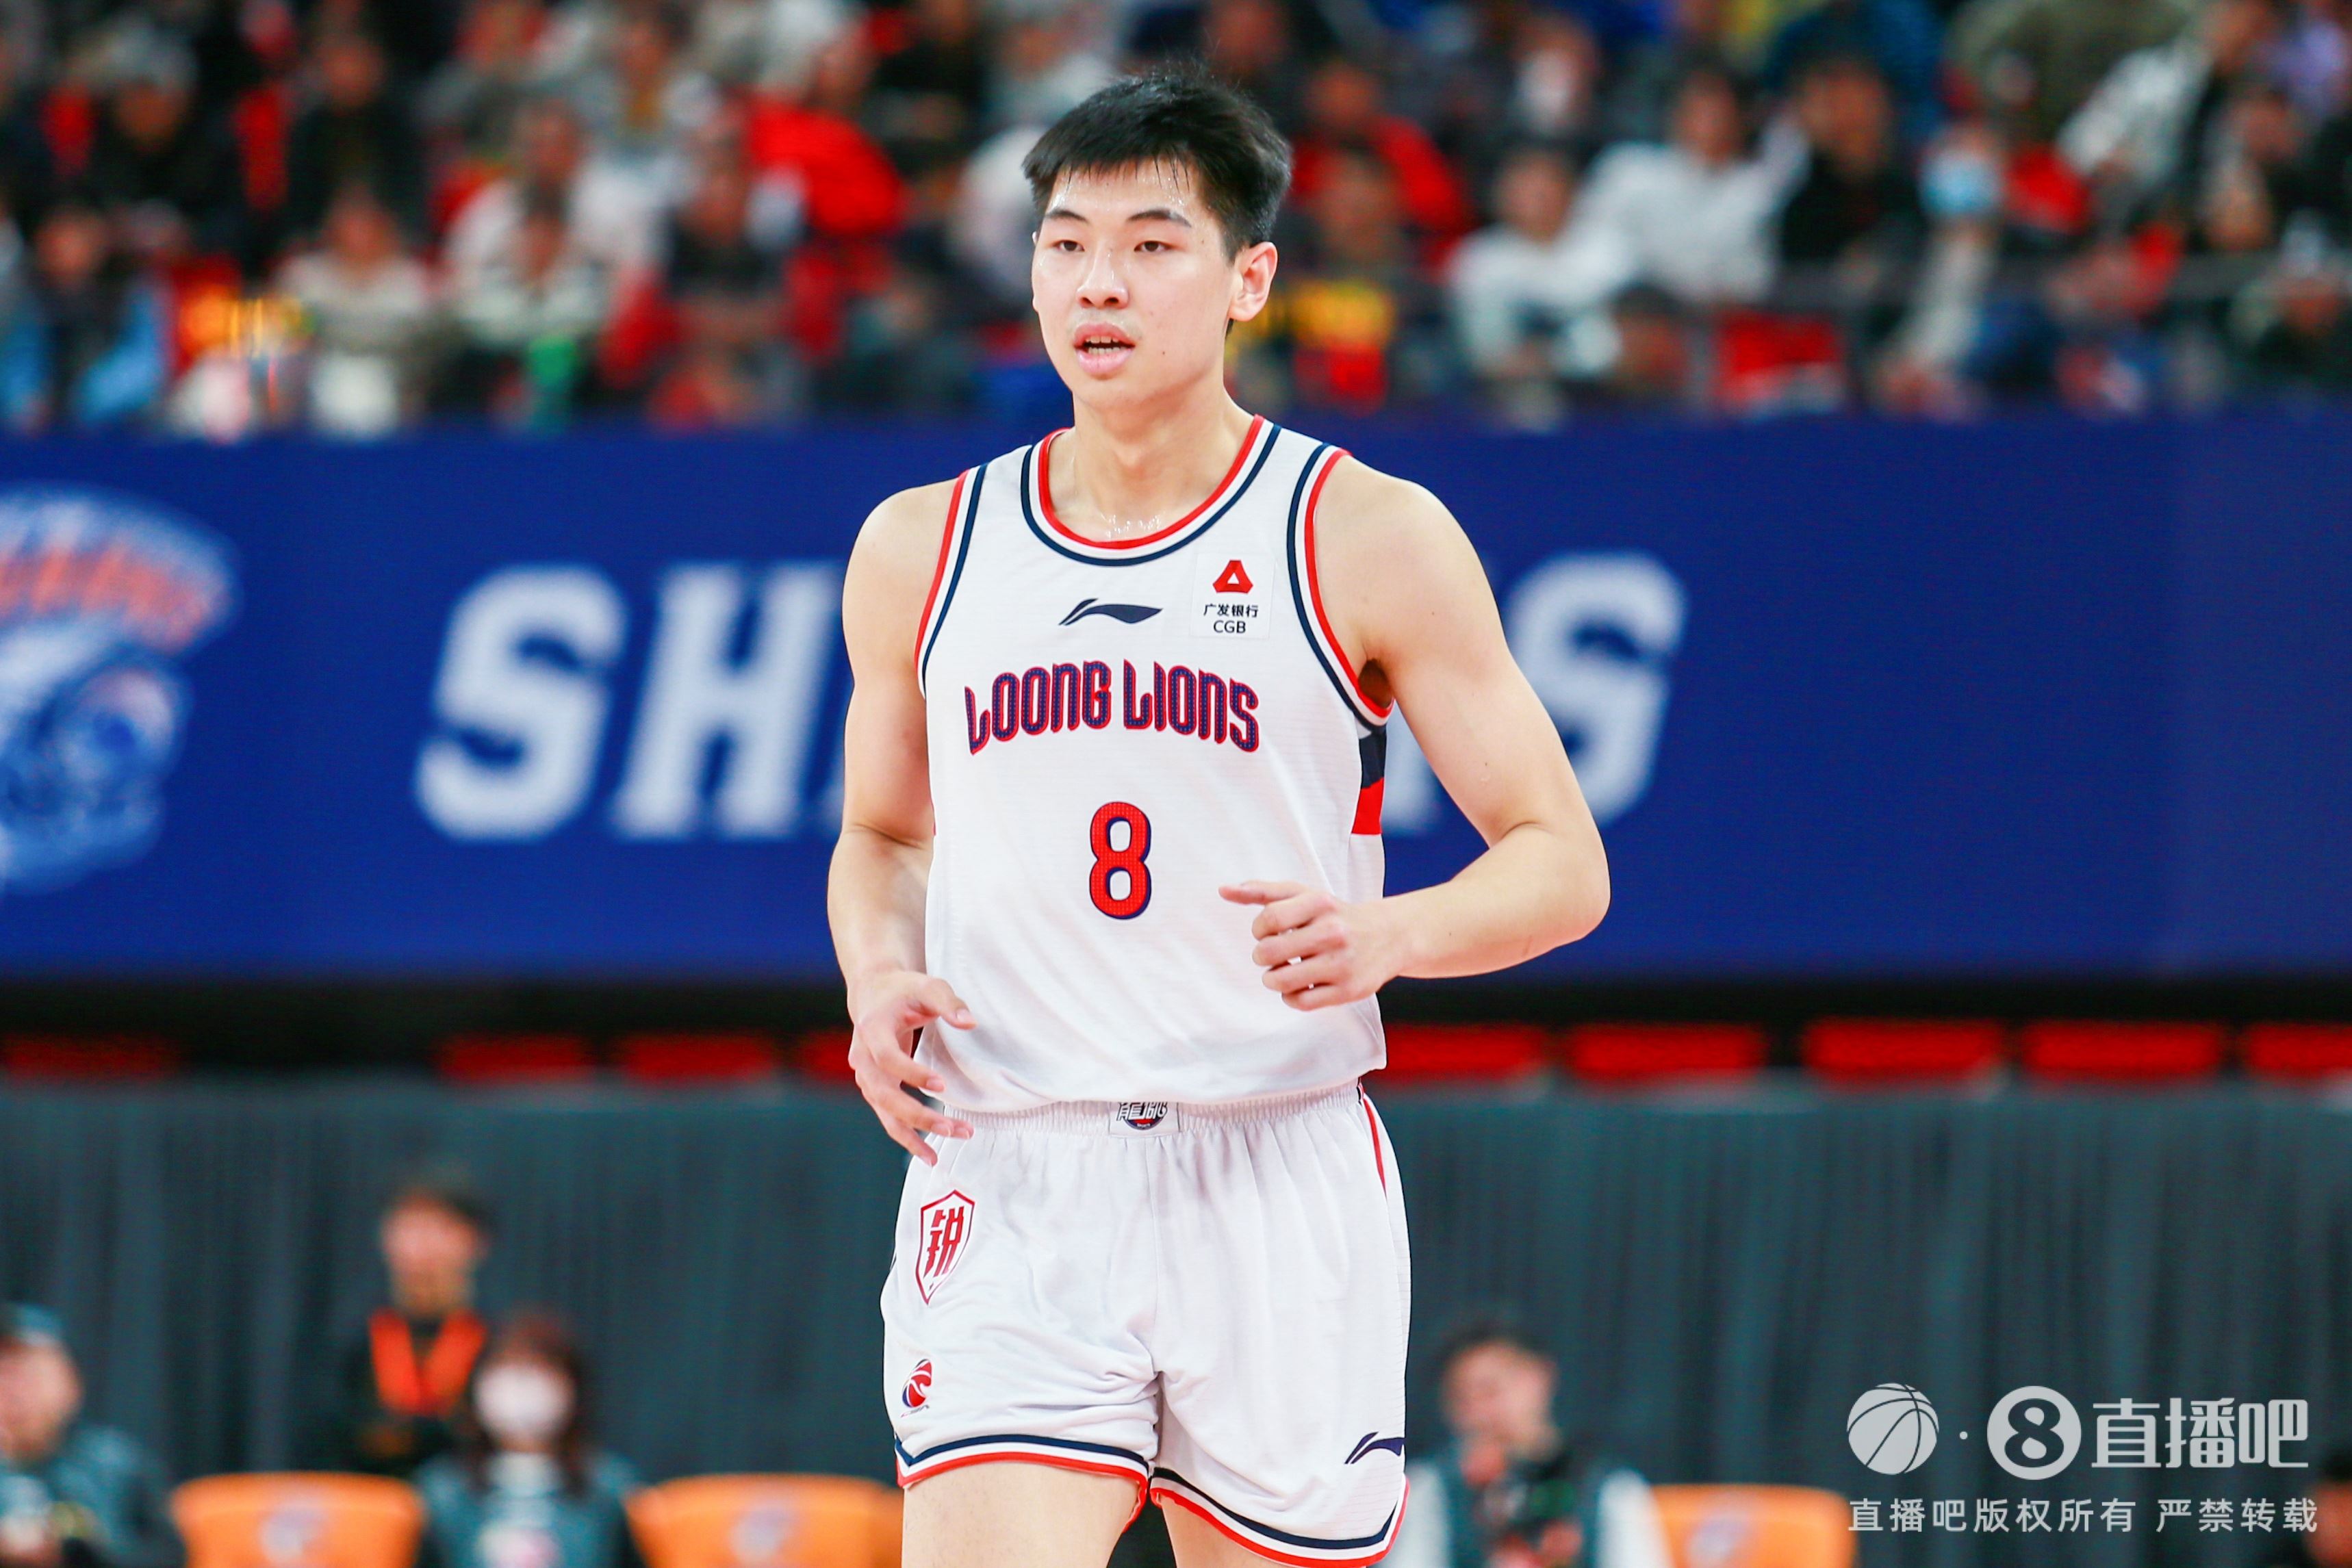 20岁小将勇敢走出舒适区值得称赞 中国篮球需要更多“崔永熙”